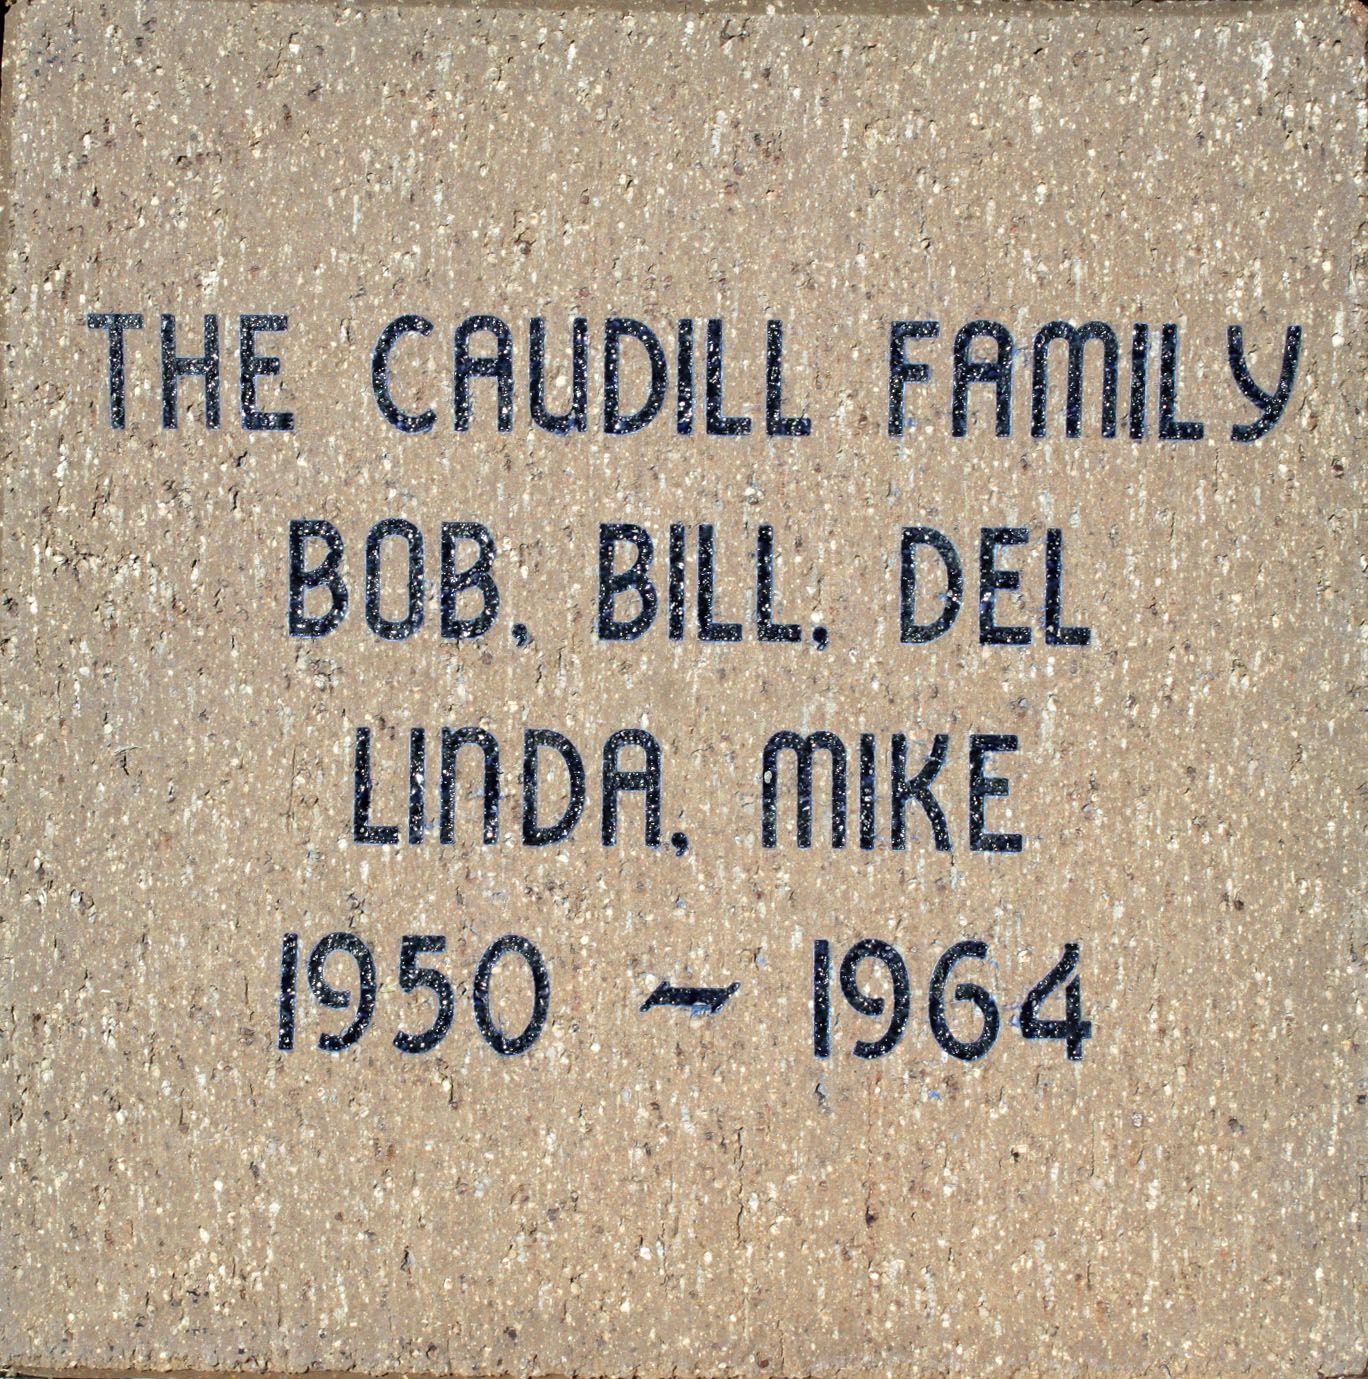 Caudill family